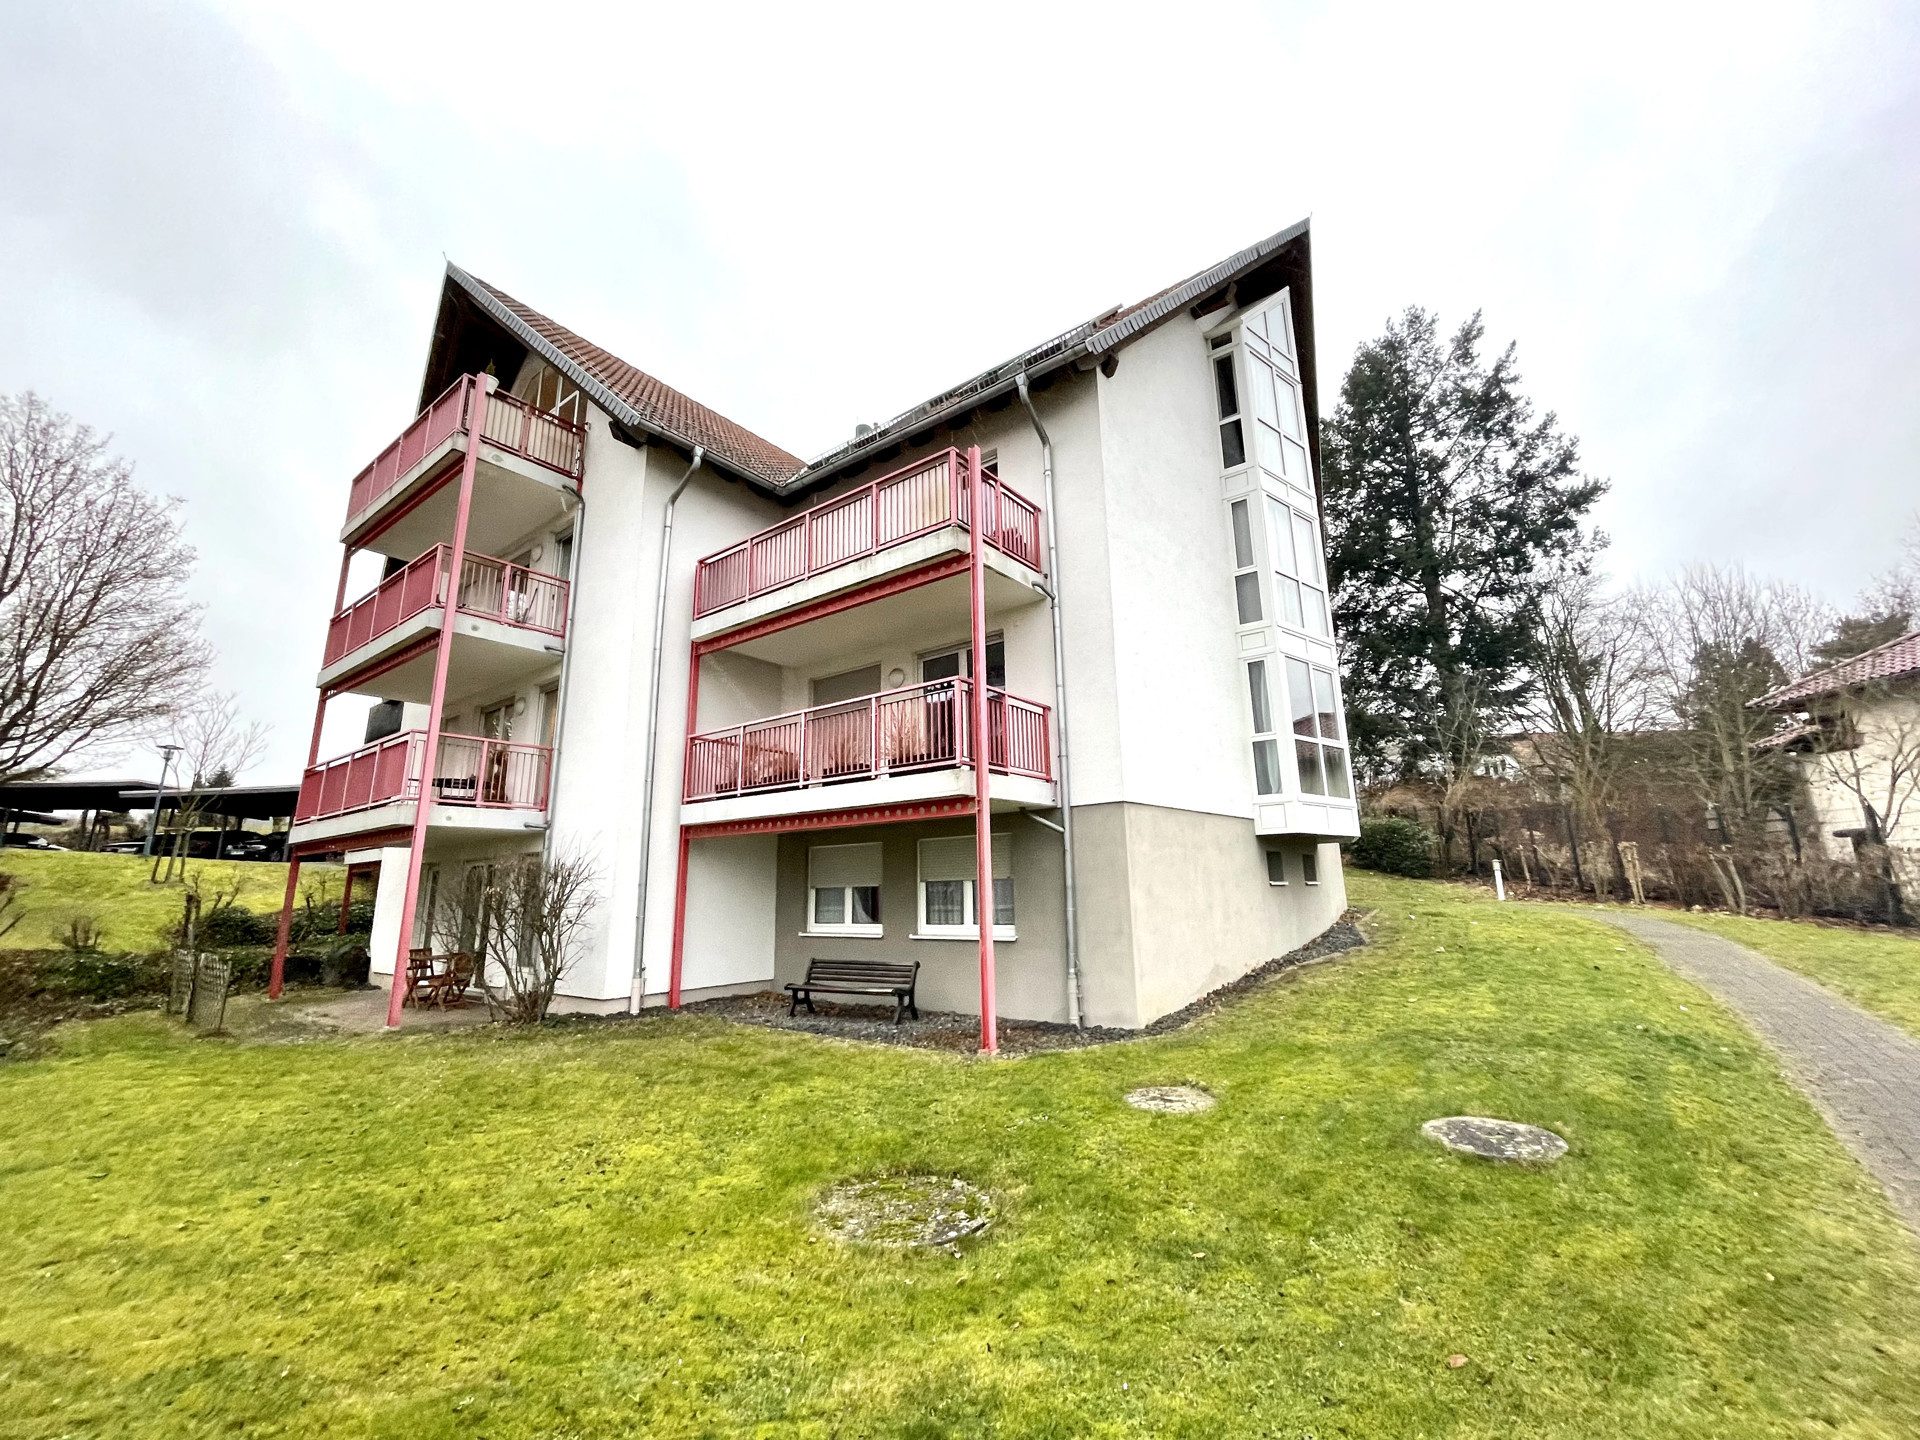 Immobilienangebot - Melsungen - Alle - Schöne 2ZKB-Wohnung mit Balkon in Melsungen zu vermieten!